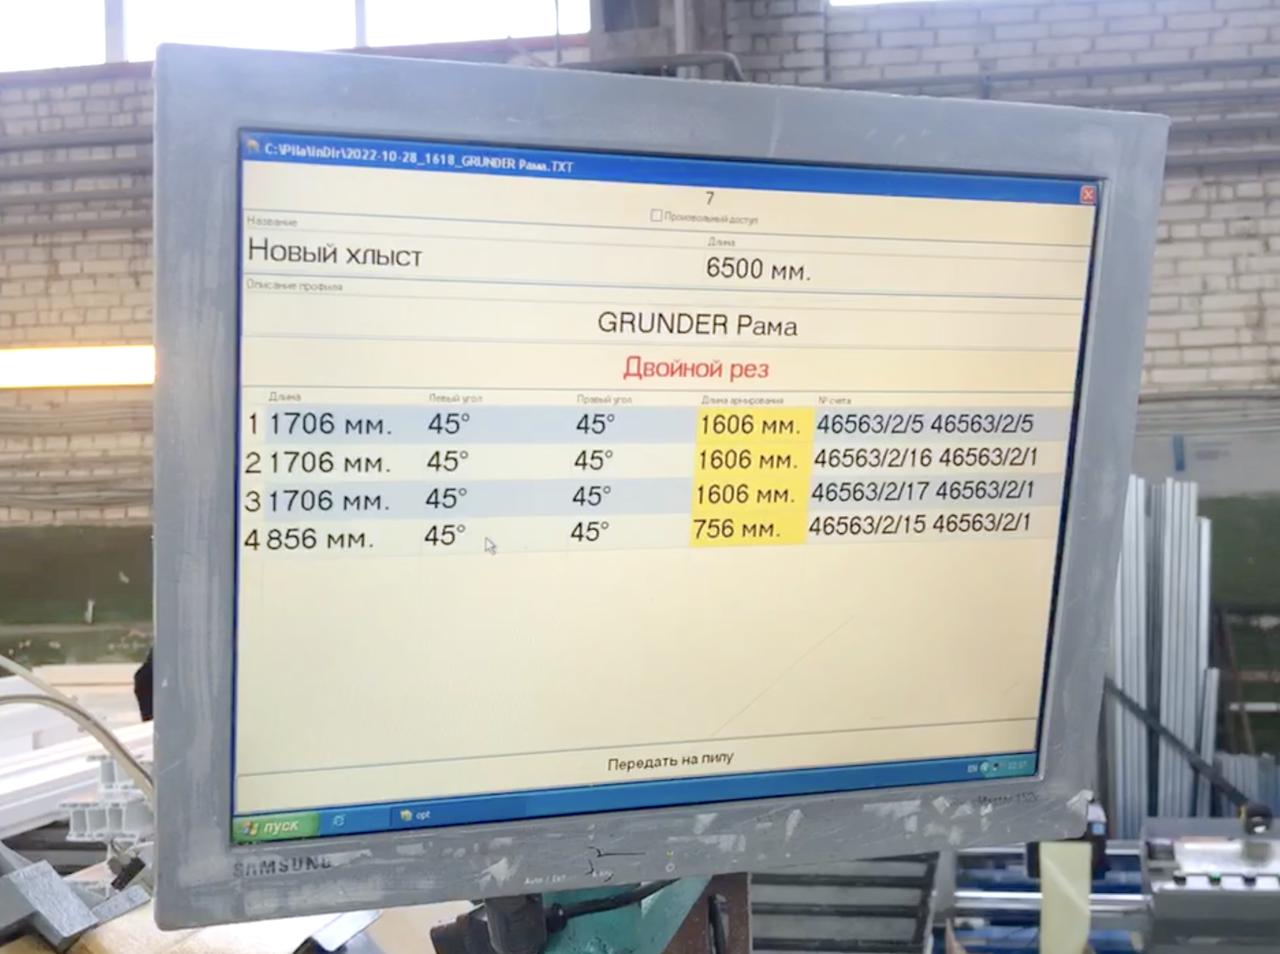 PERTICI UNIVER 500 D2K Электронная двухголовочная отрезная машина на Windows с принтером штрихкодов и фронтальной подачей дисков для резки одновременно двух профилей (Б/У оборудование)